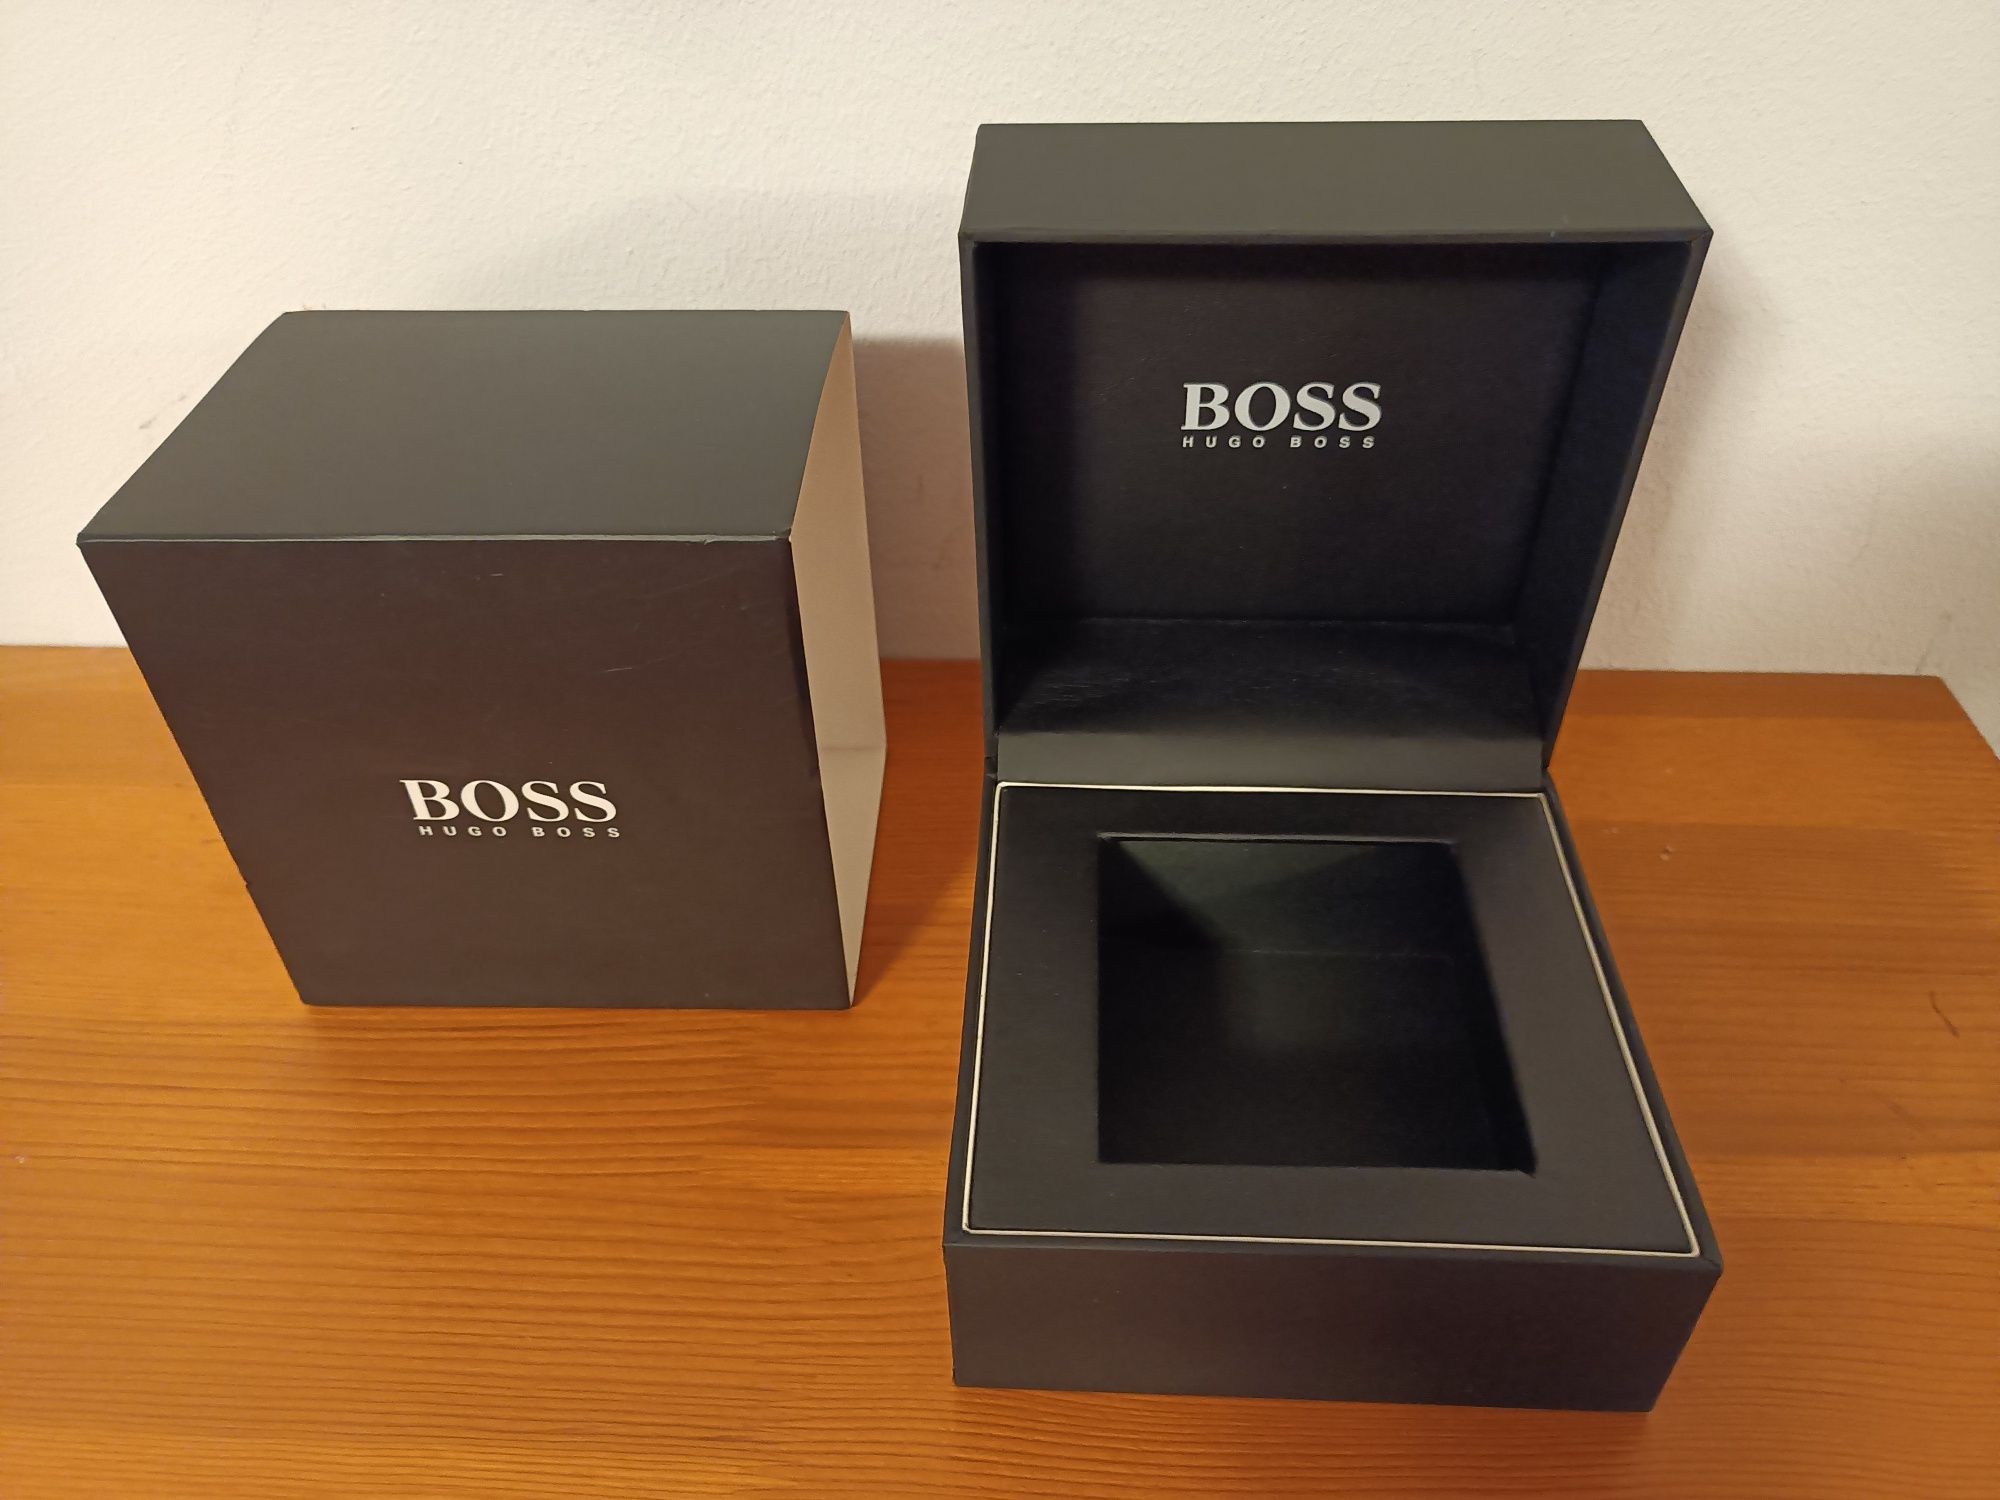 Boss Hugo Boss  Pudełko do Zegarka Pudełko na Zegarek Boss Super!!